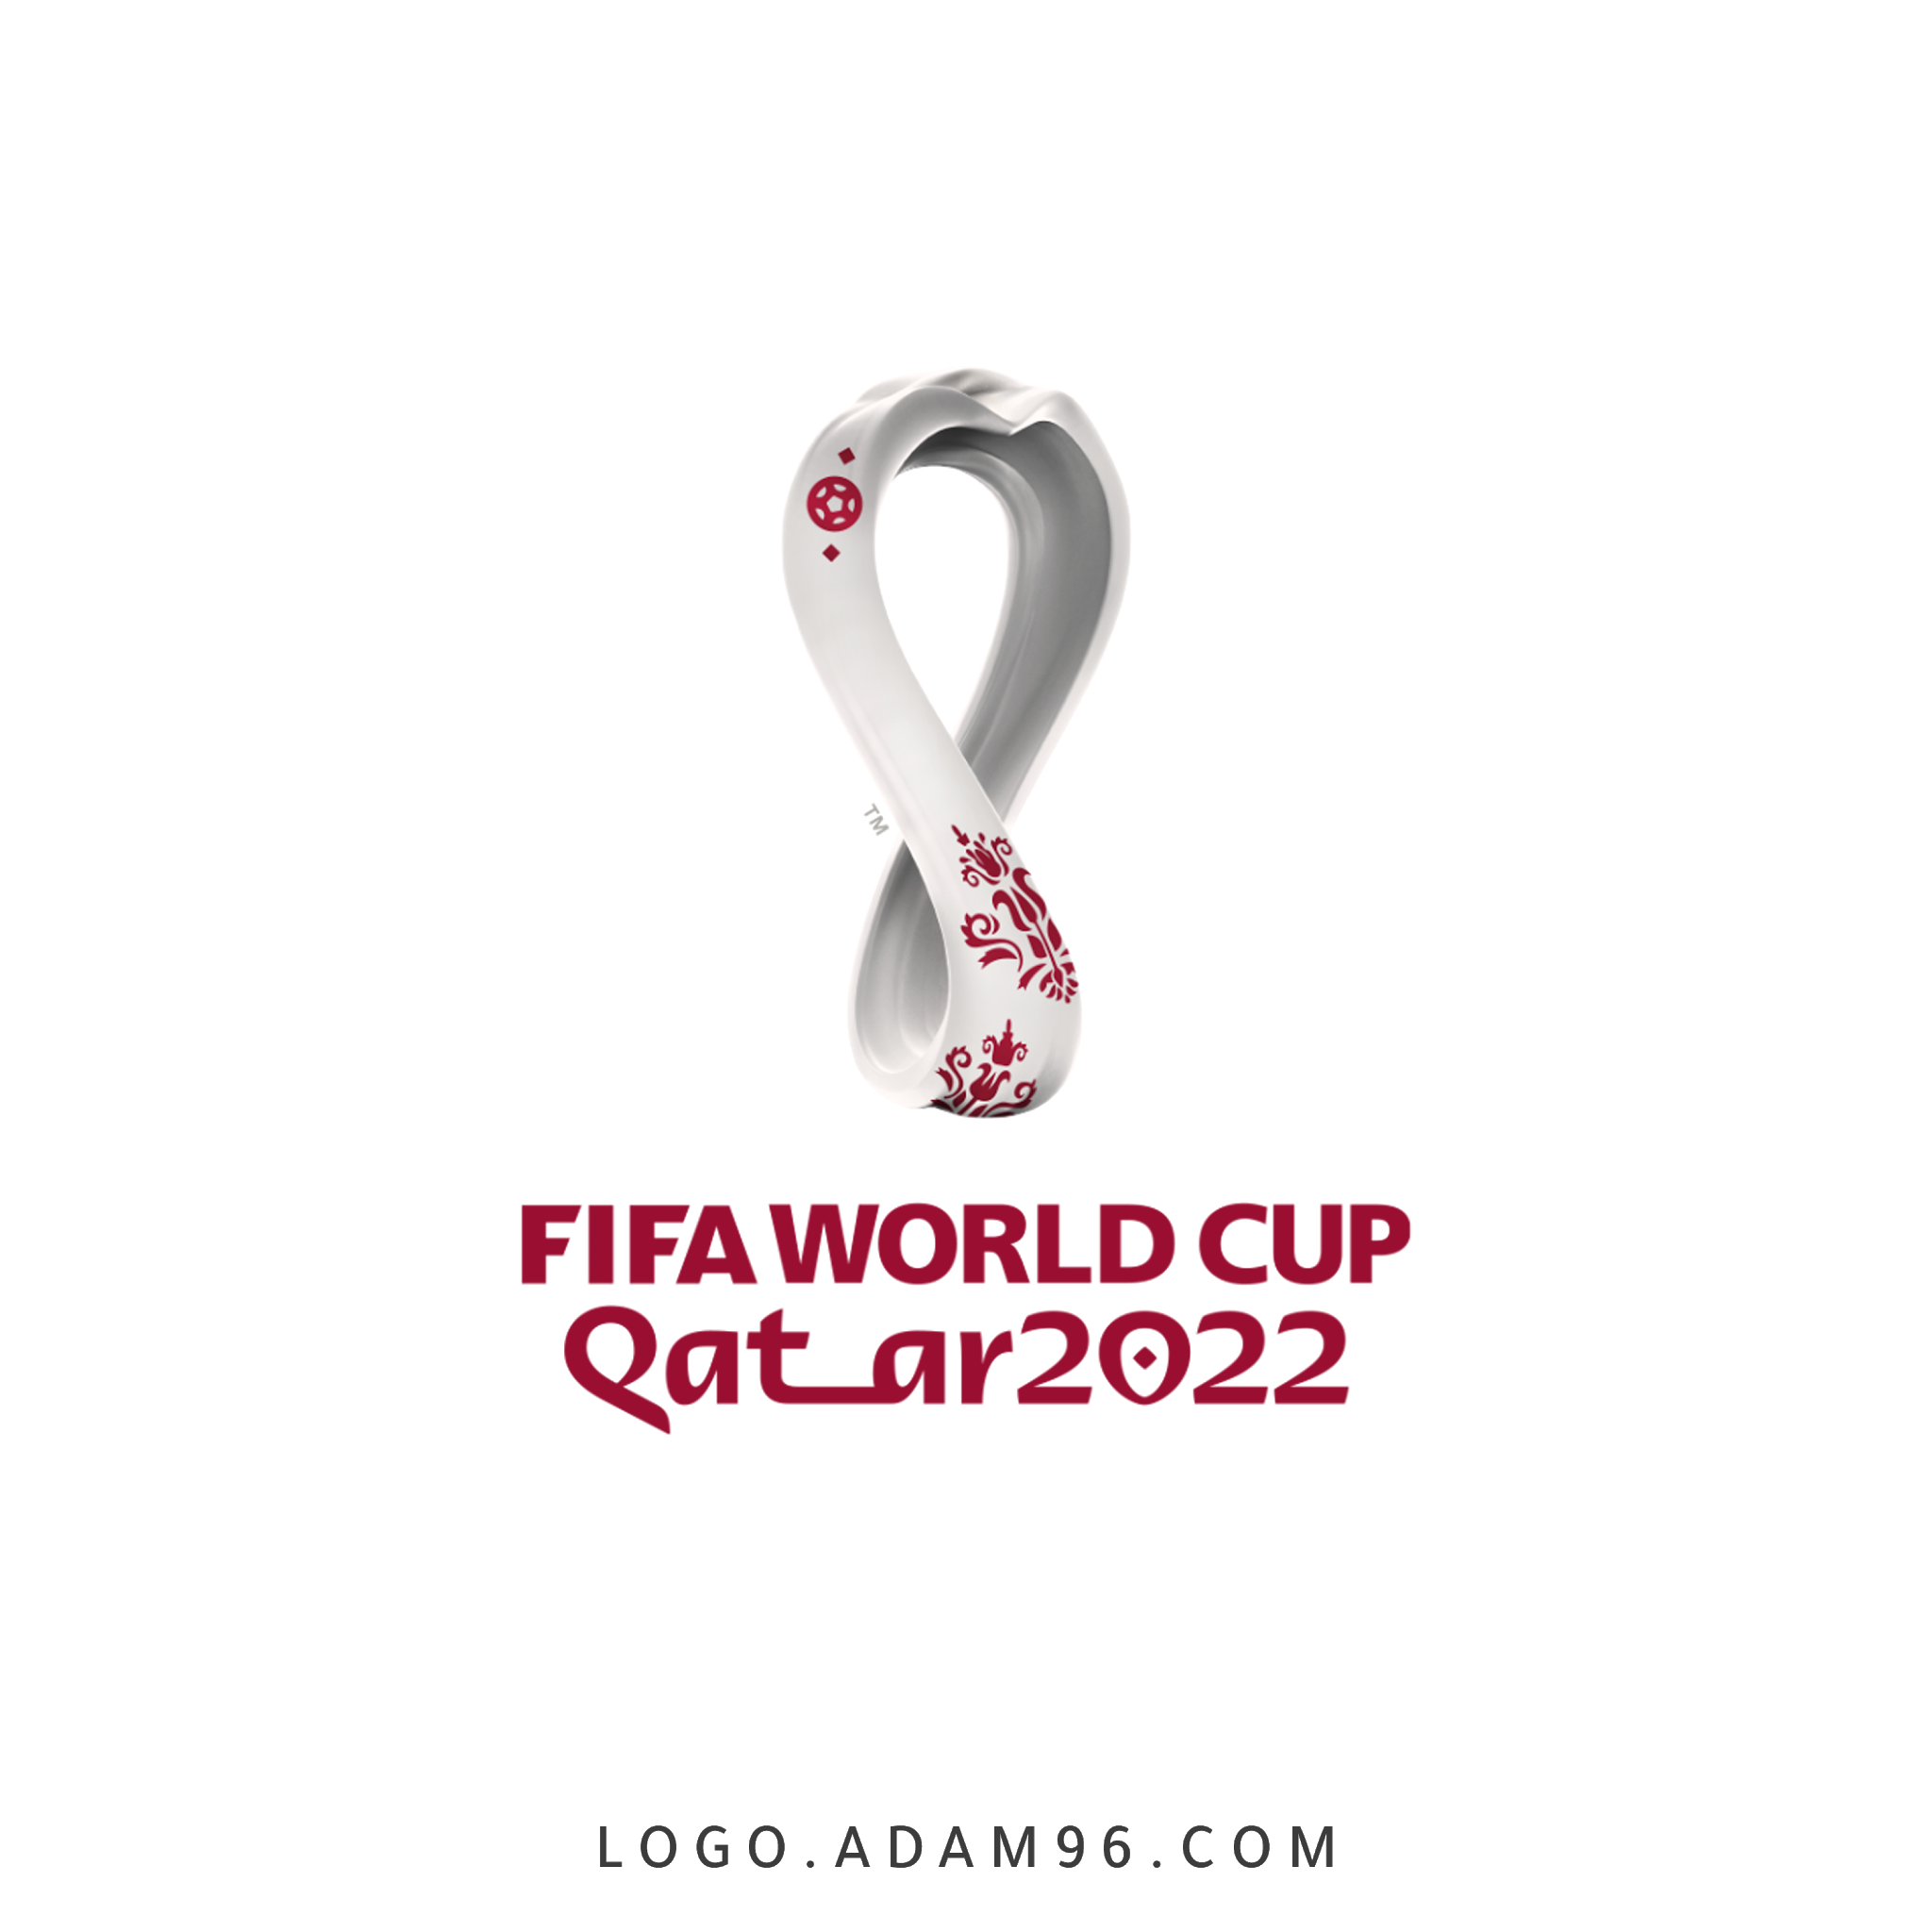 تحميل شعار مونديال 2022 في قطر الرسمي بجودة عالية PNG - شعارات رياضية